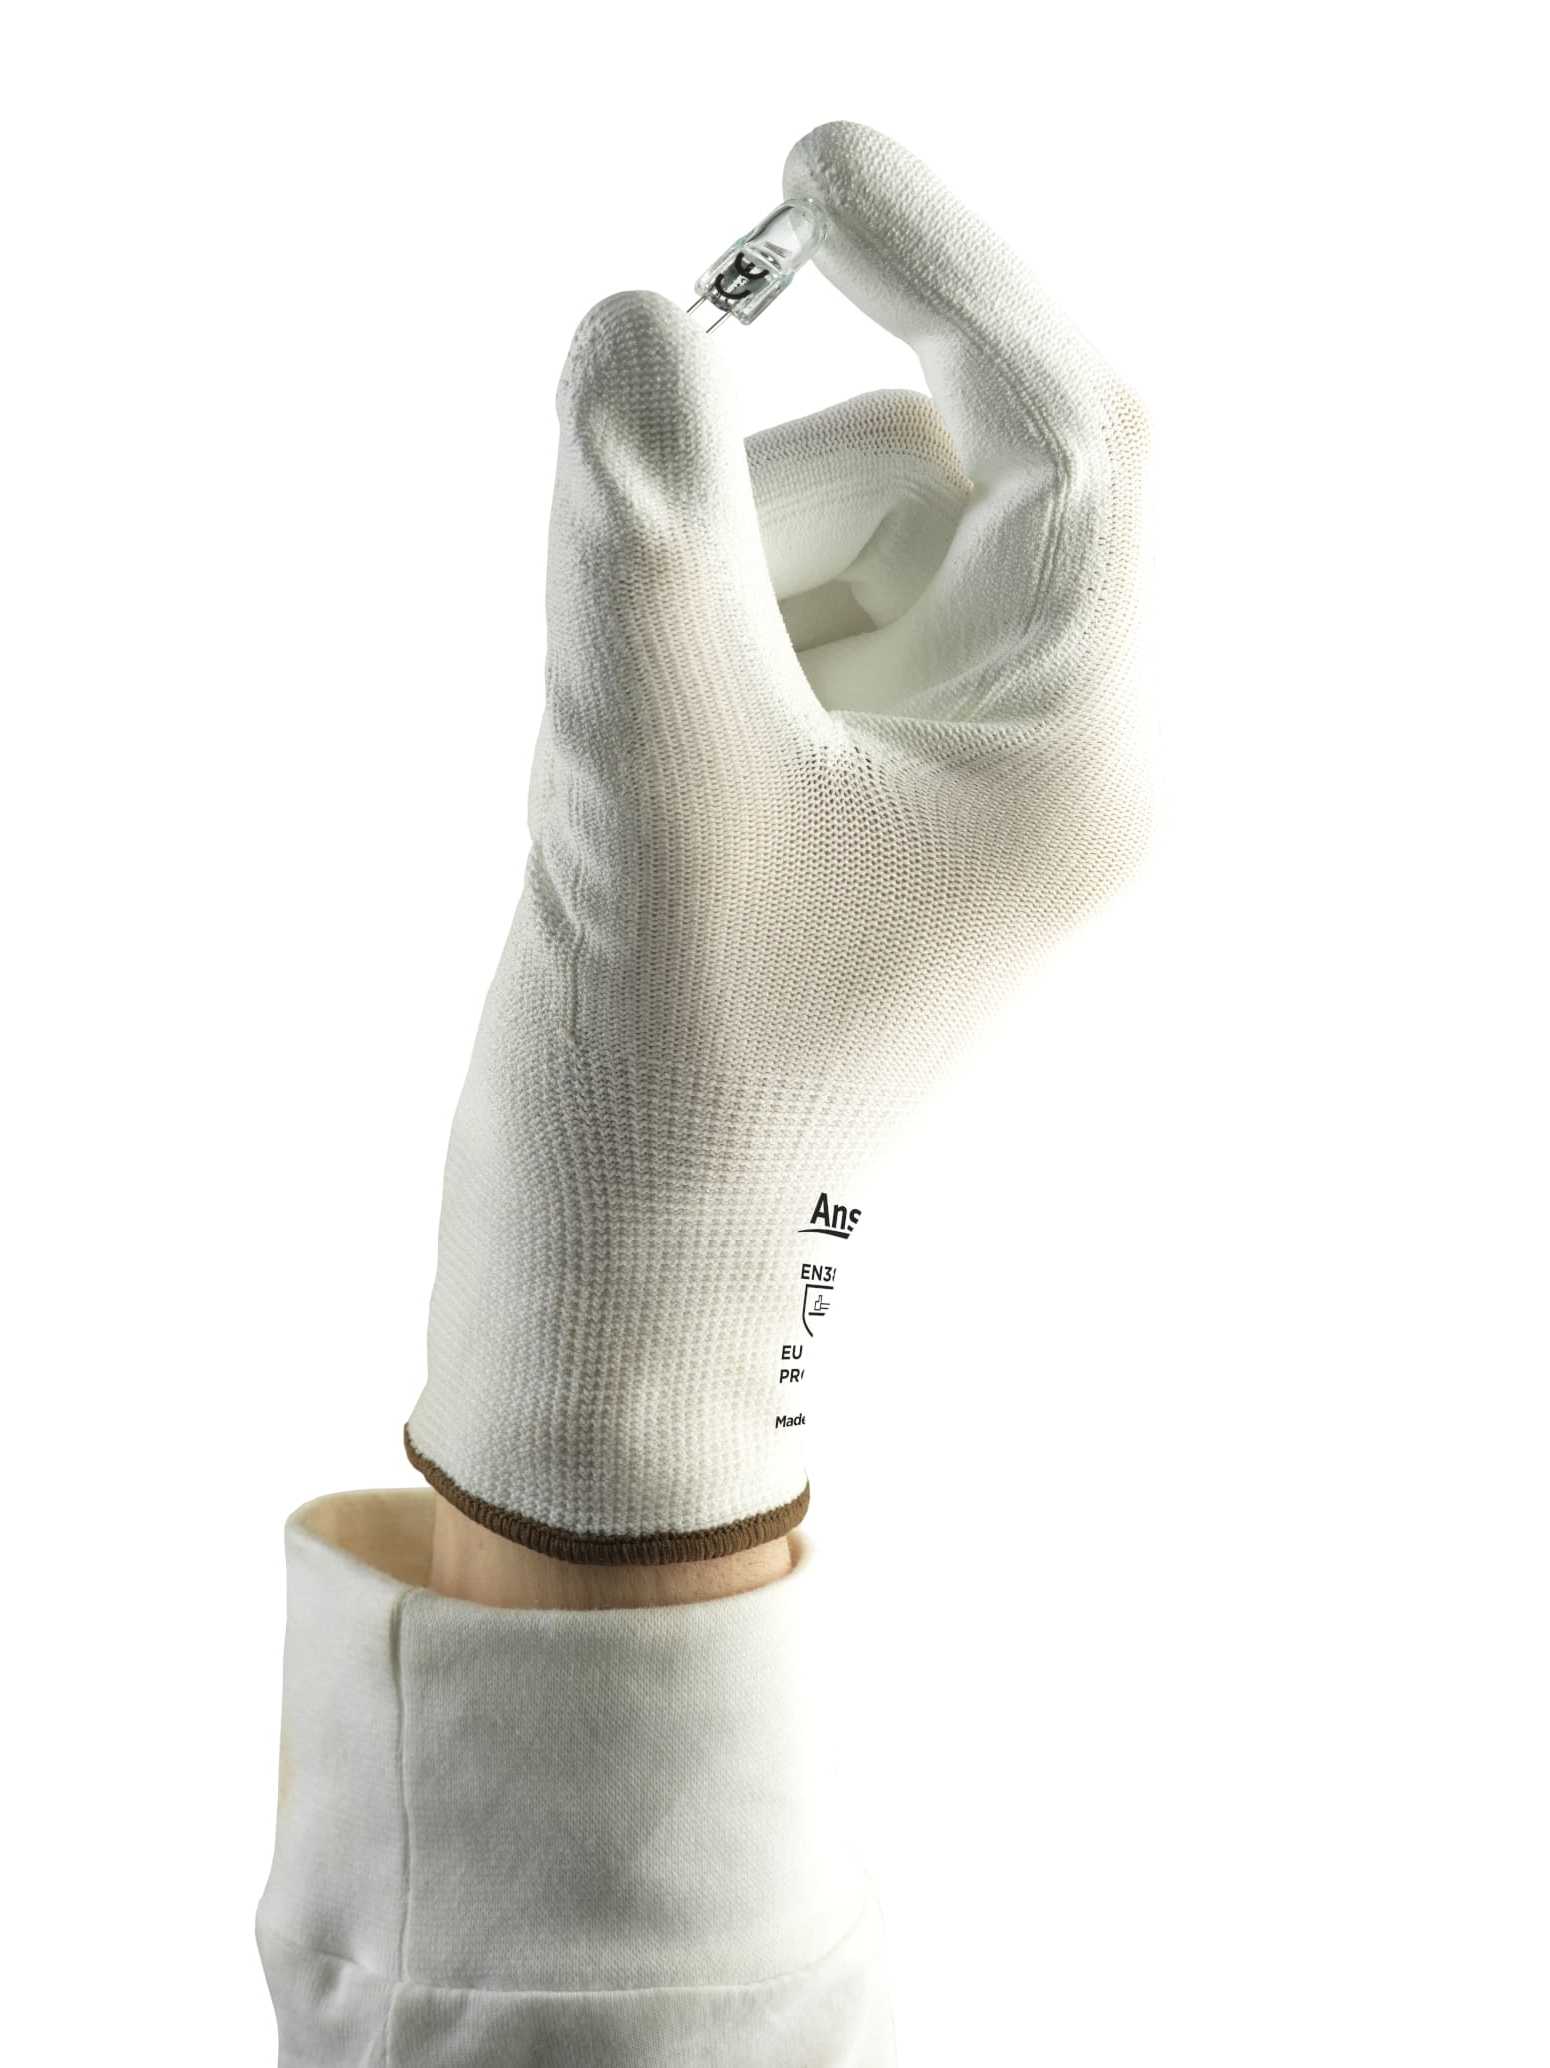 HyFlex 48-100 Safety Gloves - 12 Pairs